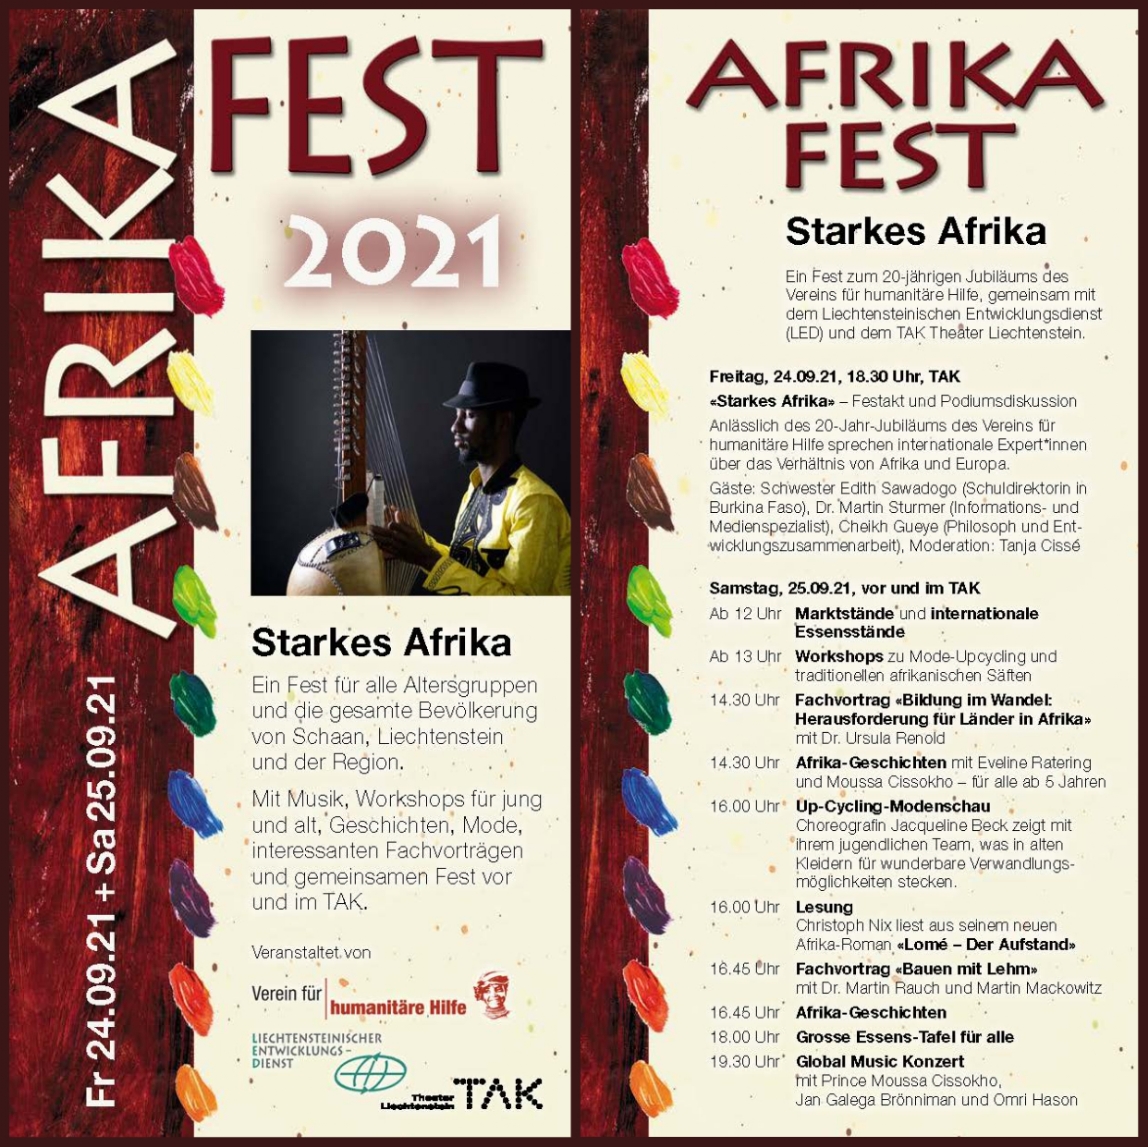 Bild von Afrika Fest 2021